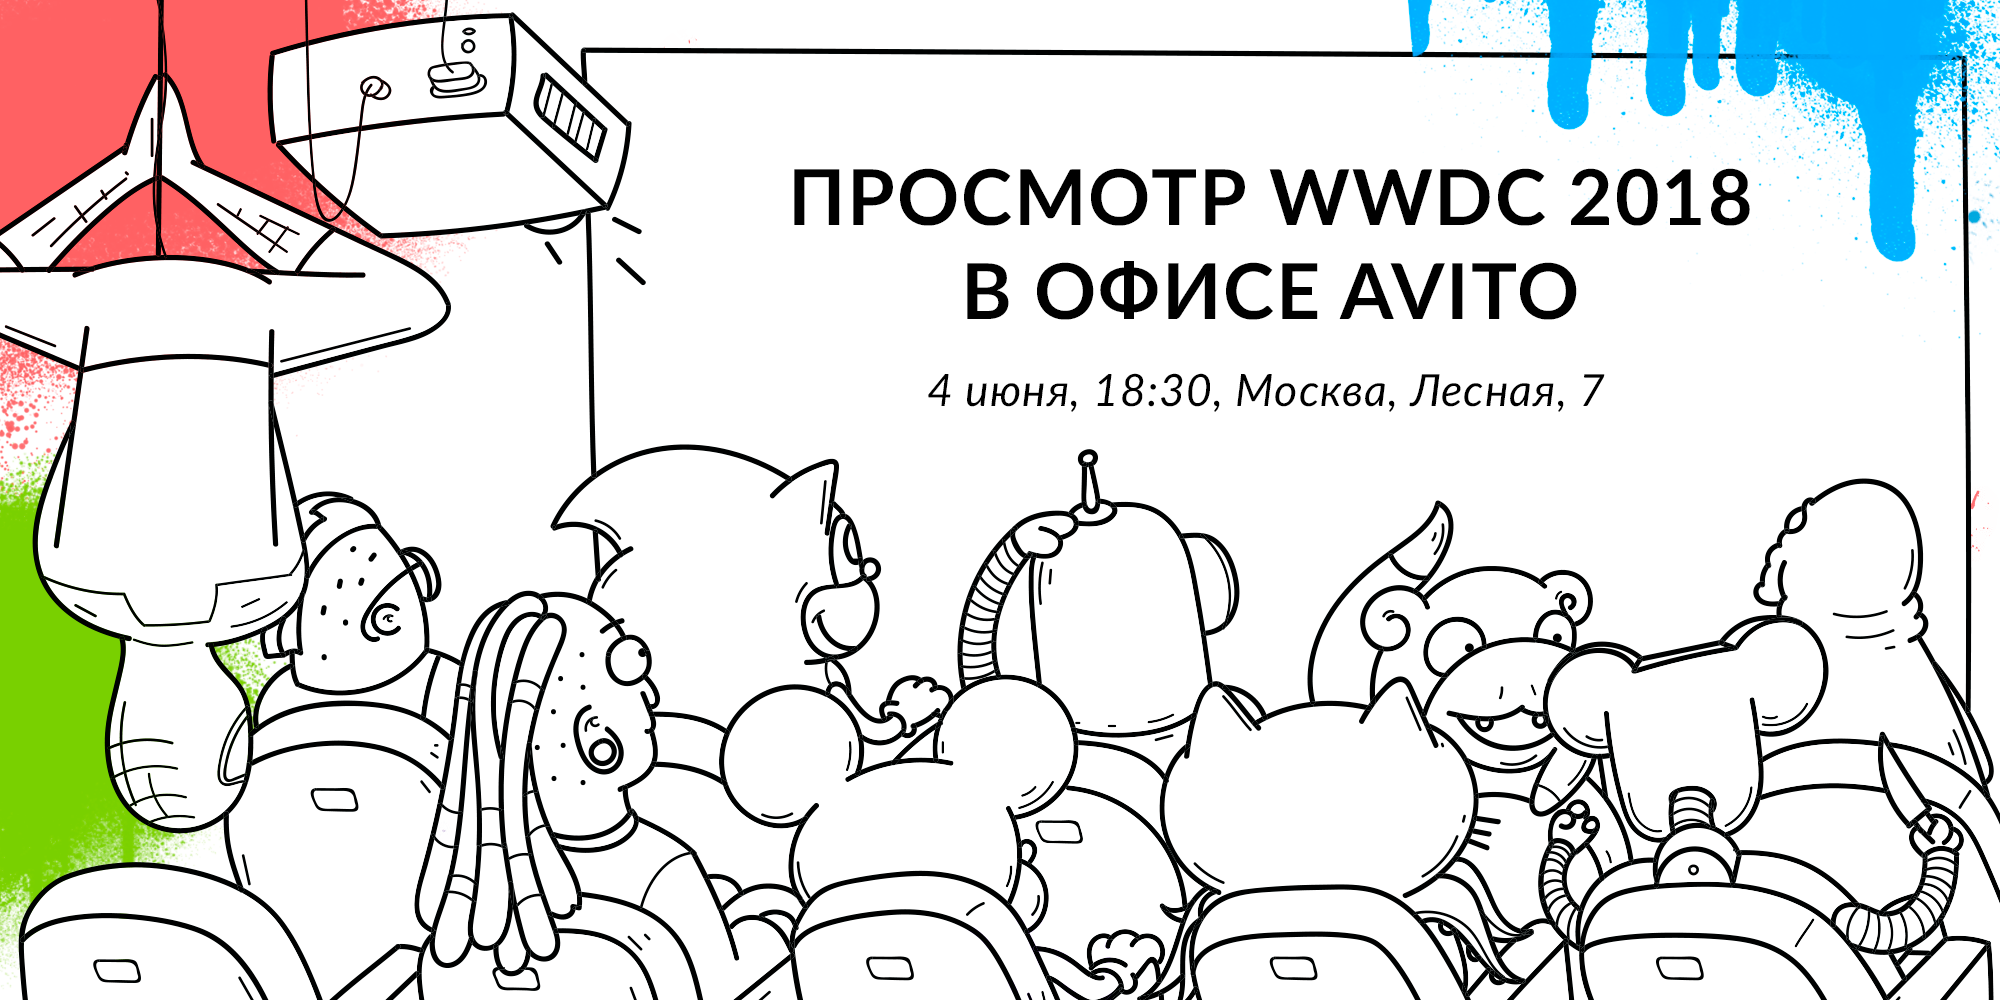 Экспресс Москва — Сан-Хосе: совместный просмотр WWDC 2018 в офисе Авито 4 июня - 1